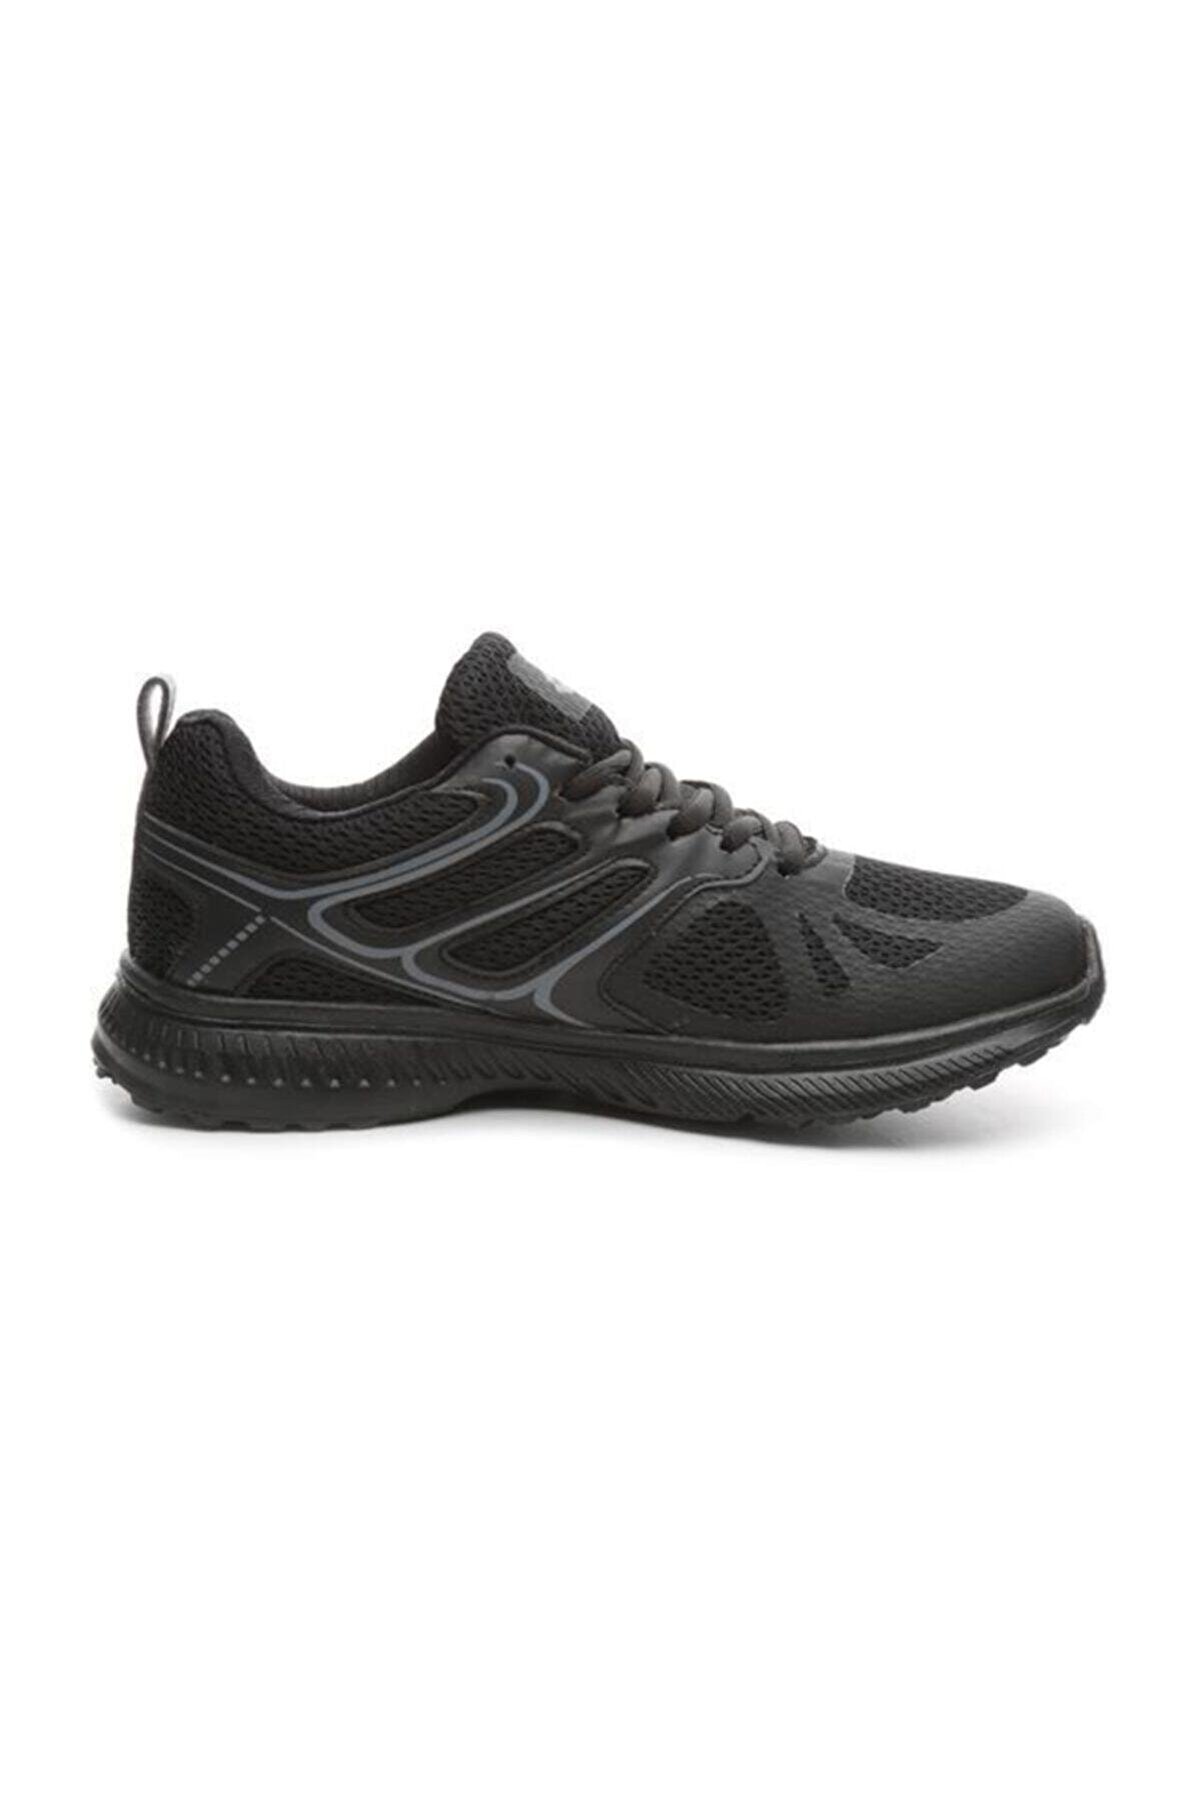 Lotto Unisex Siyah Koşu Antrenman Ayakkabısı